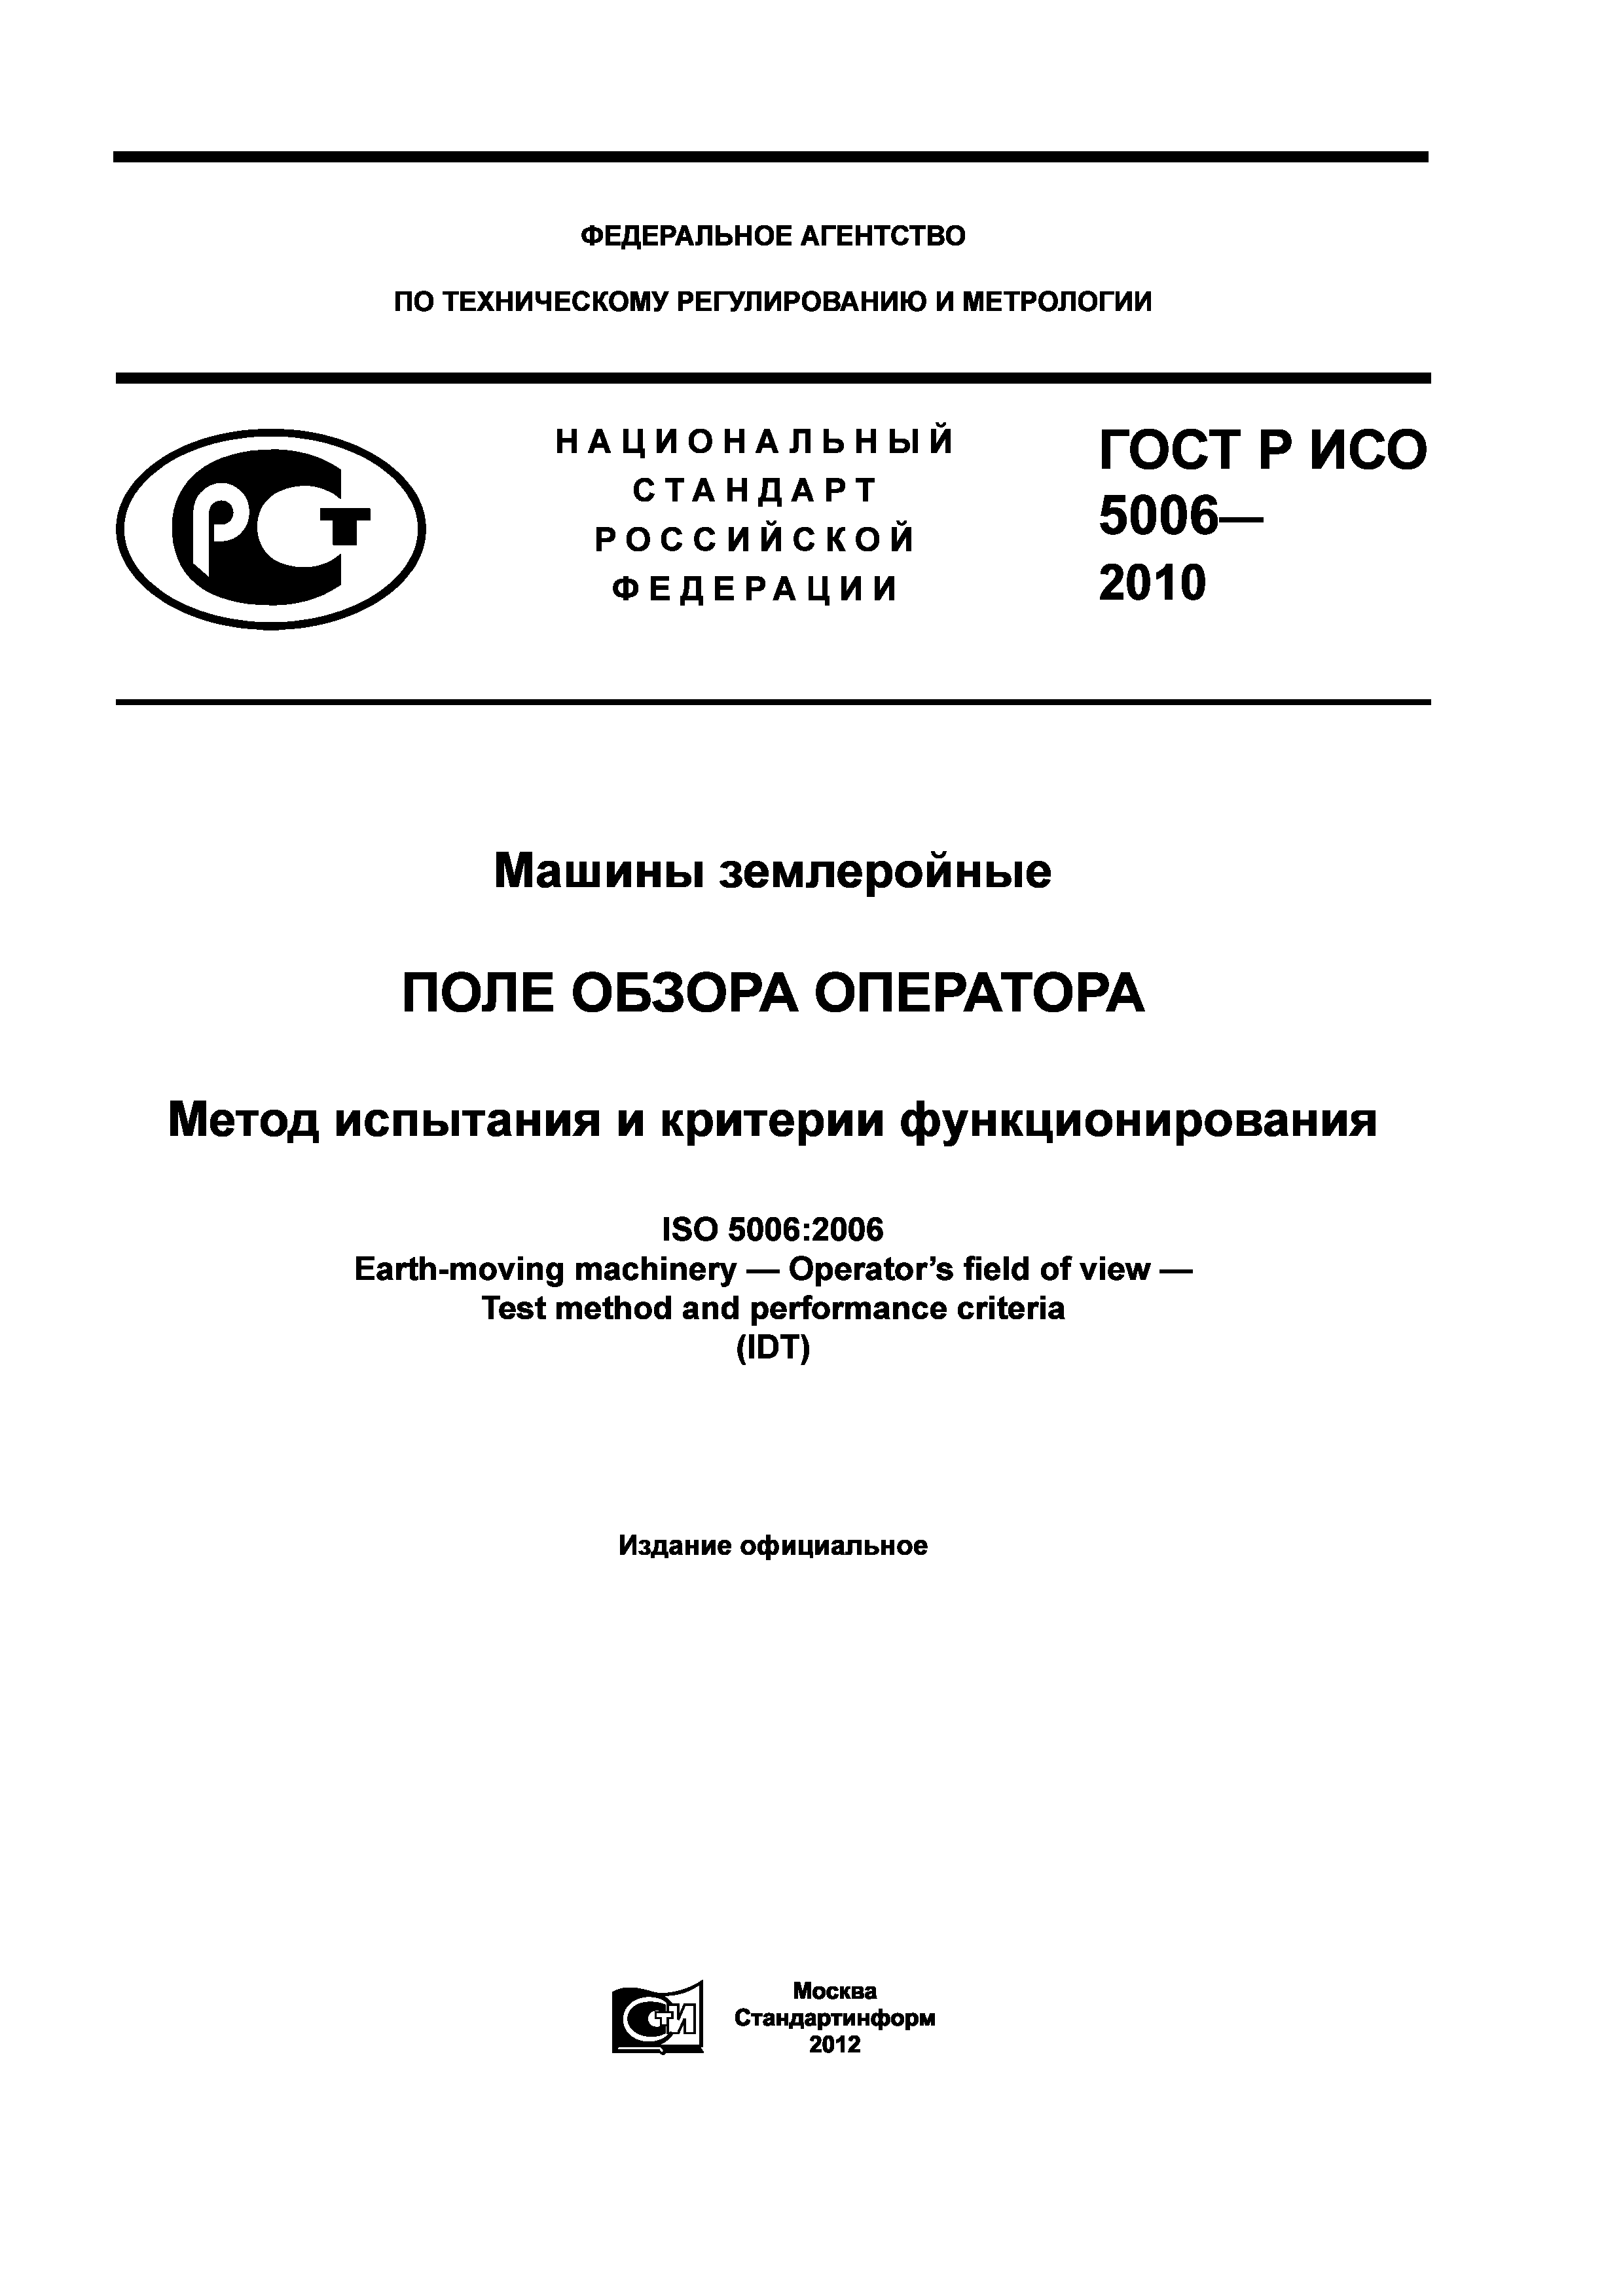 ГОСТ Р ИСО 5006-2010